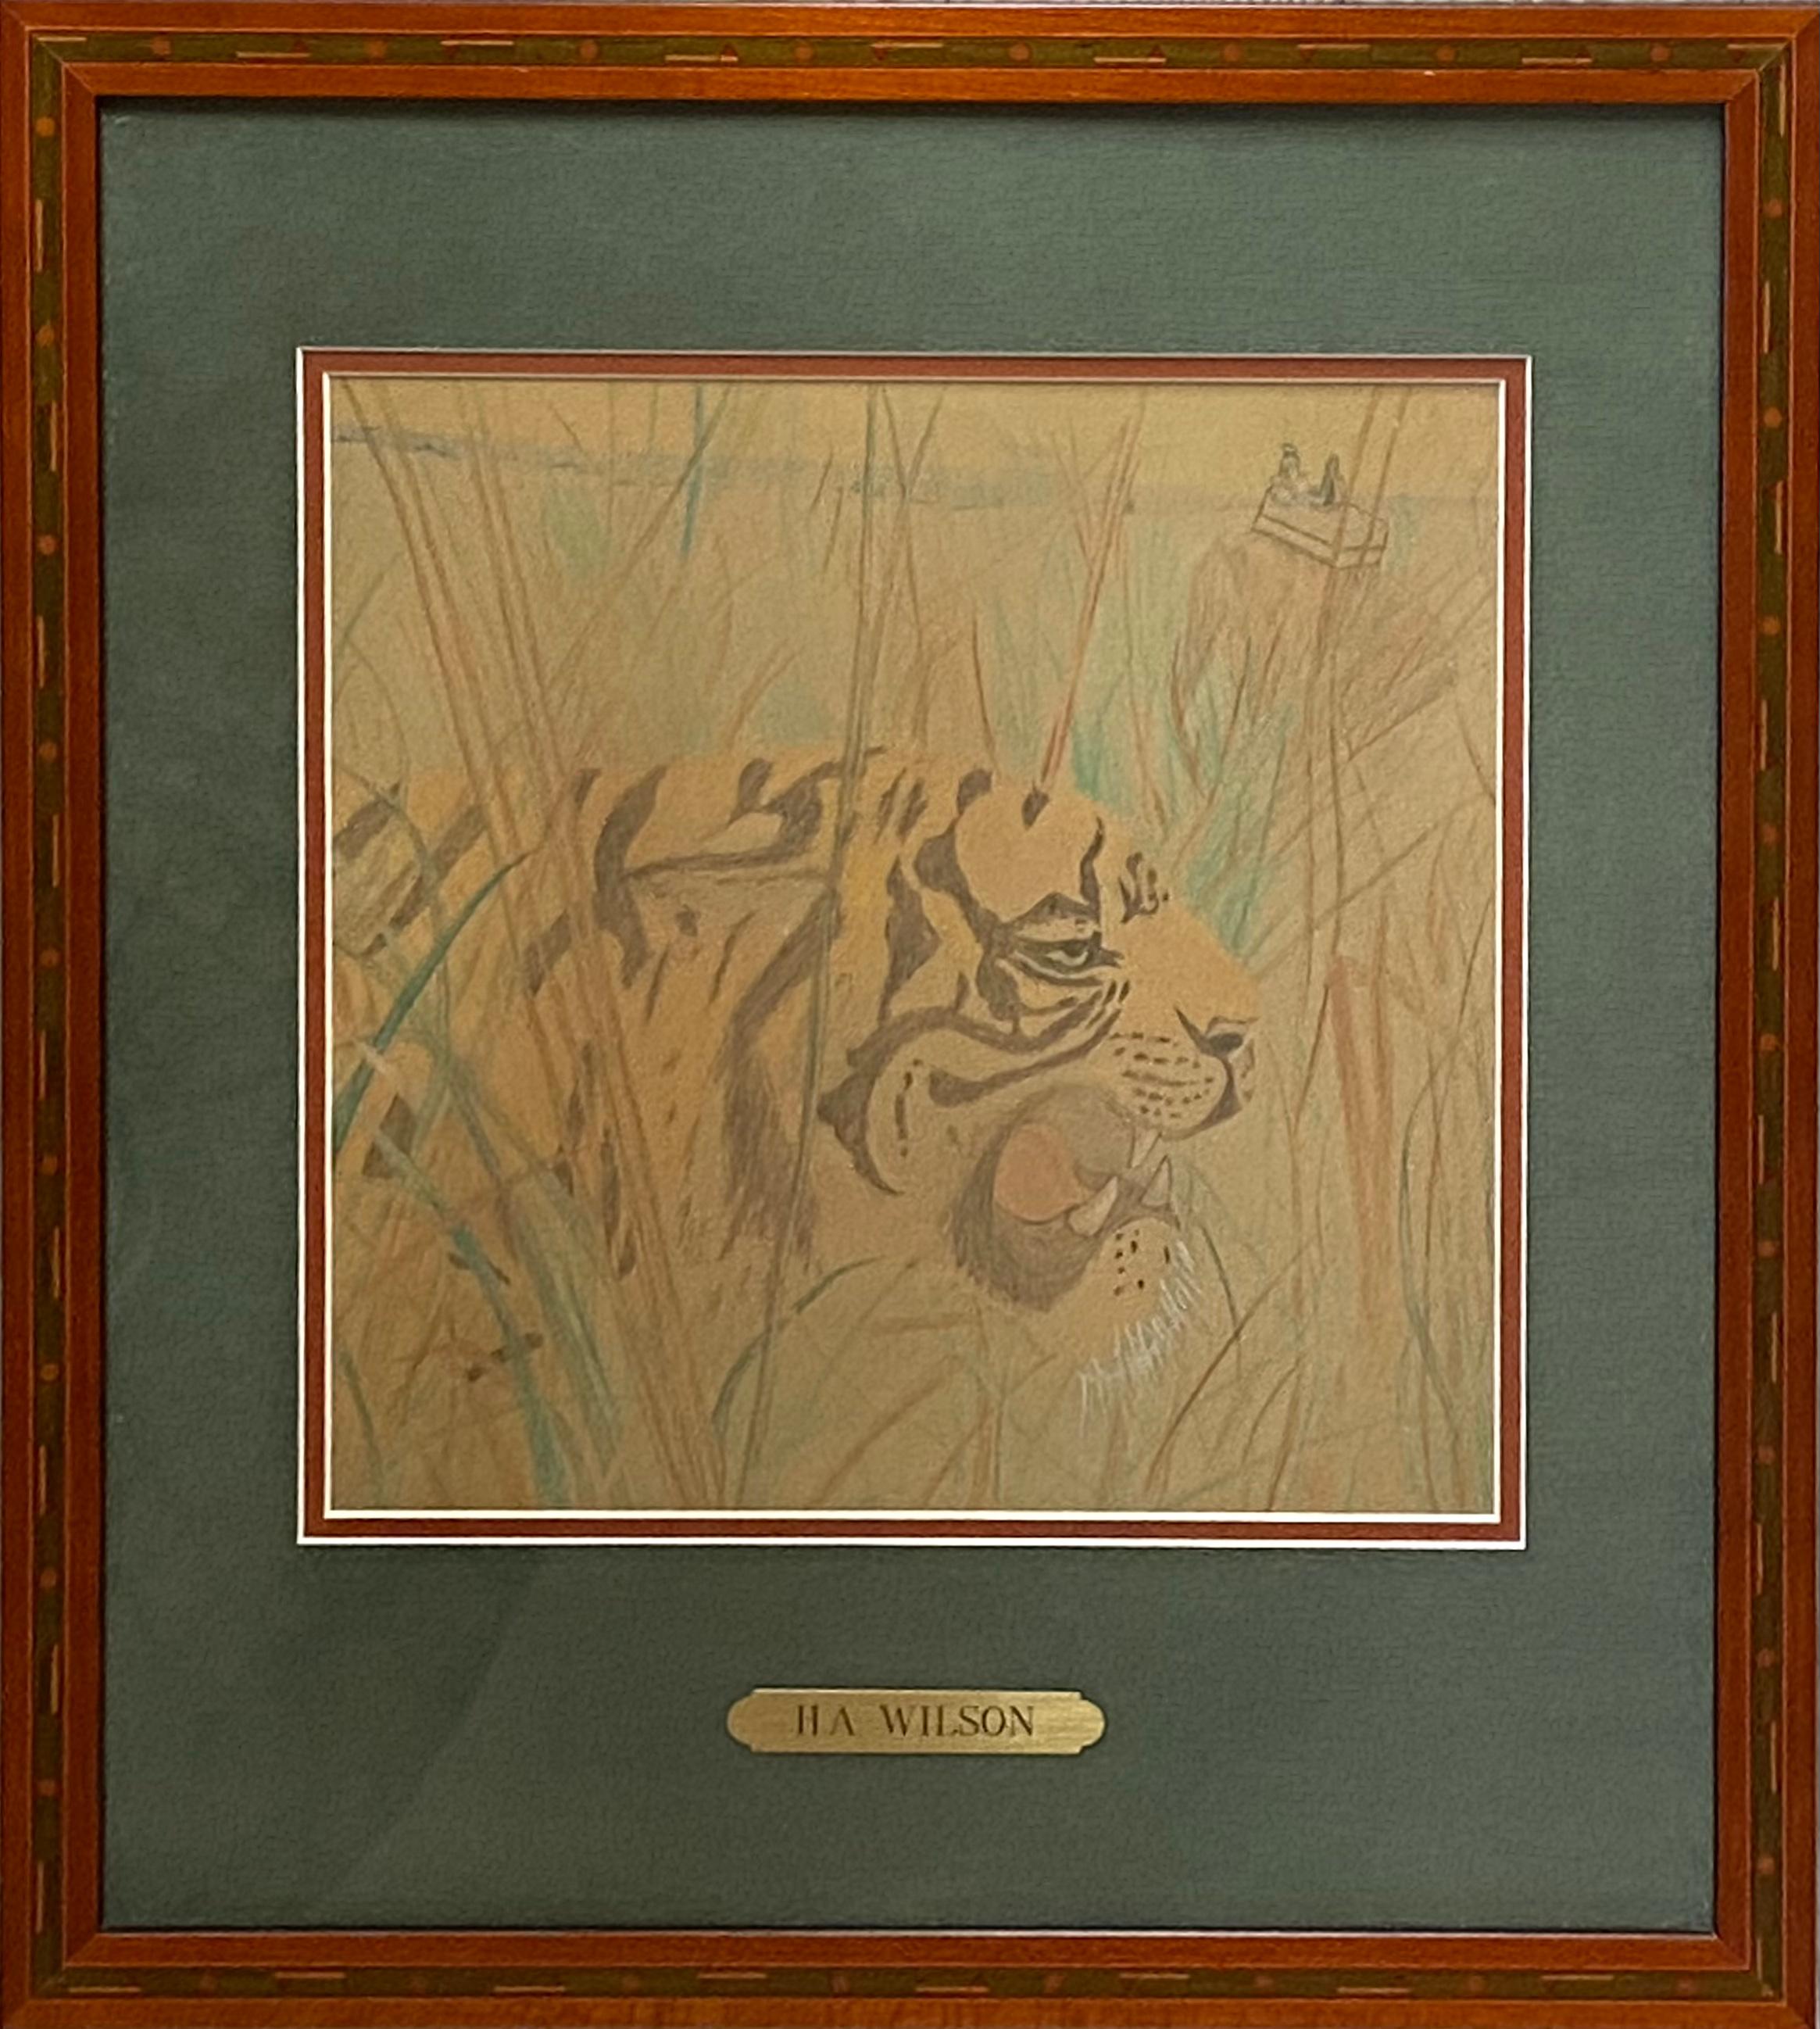 Crayon de couleur original sur papier d'archives représentant un tigre dans un décor de jungle, attribué à H.A. Wilson. Pas de signature visible. Non examiné hors du cadre. Aucune information actuelle sur l'artiste. Circa 1985. L'état est excellent.